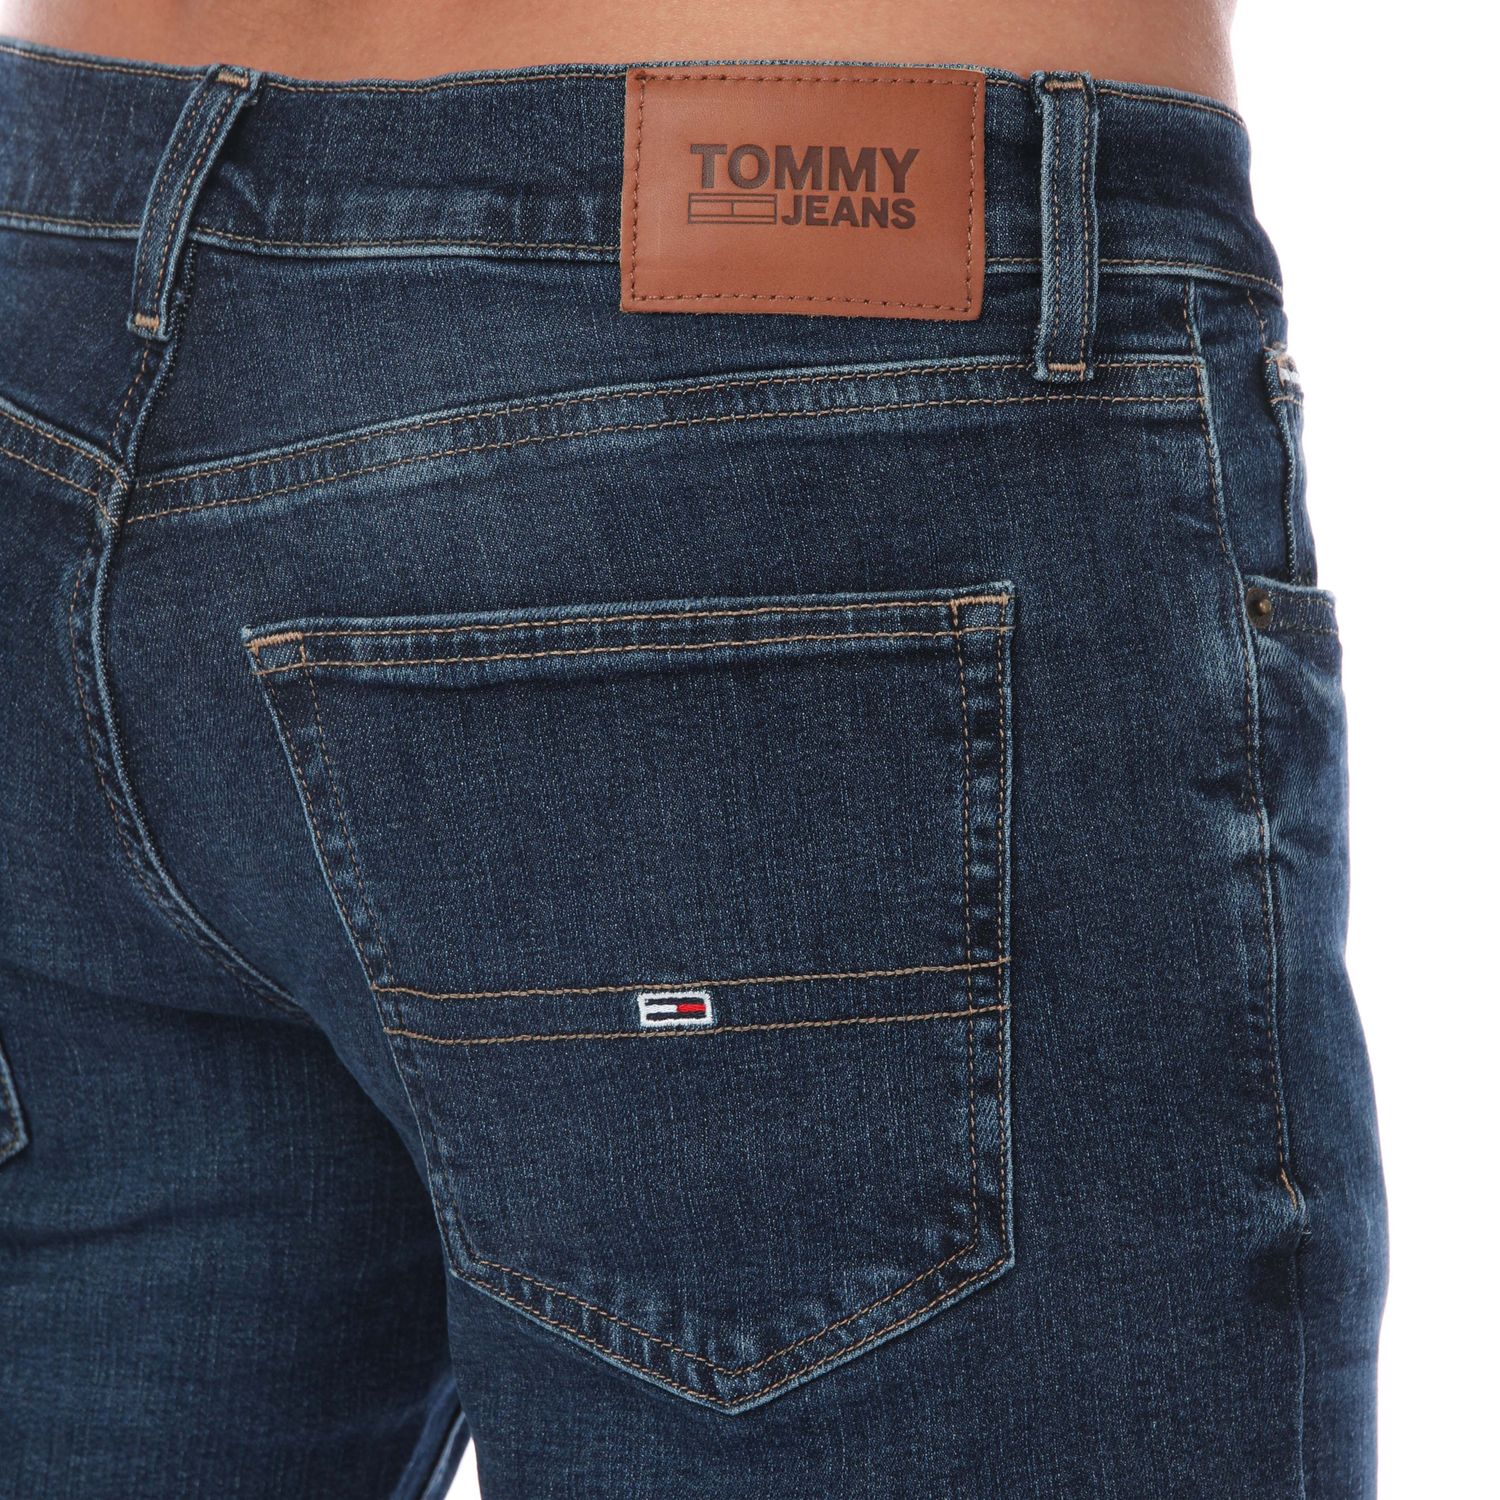 Jeans Dark Tommy Blue - Scanton Fit The Mens Hilfiger Get Label Slim